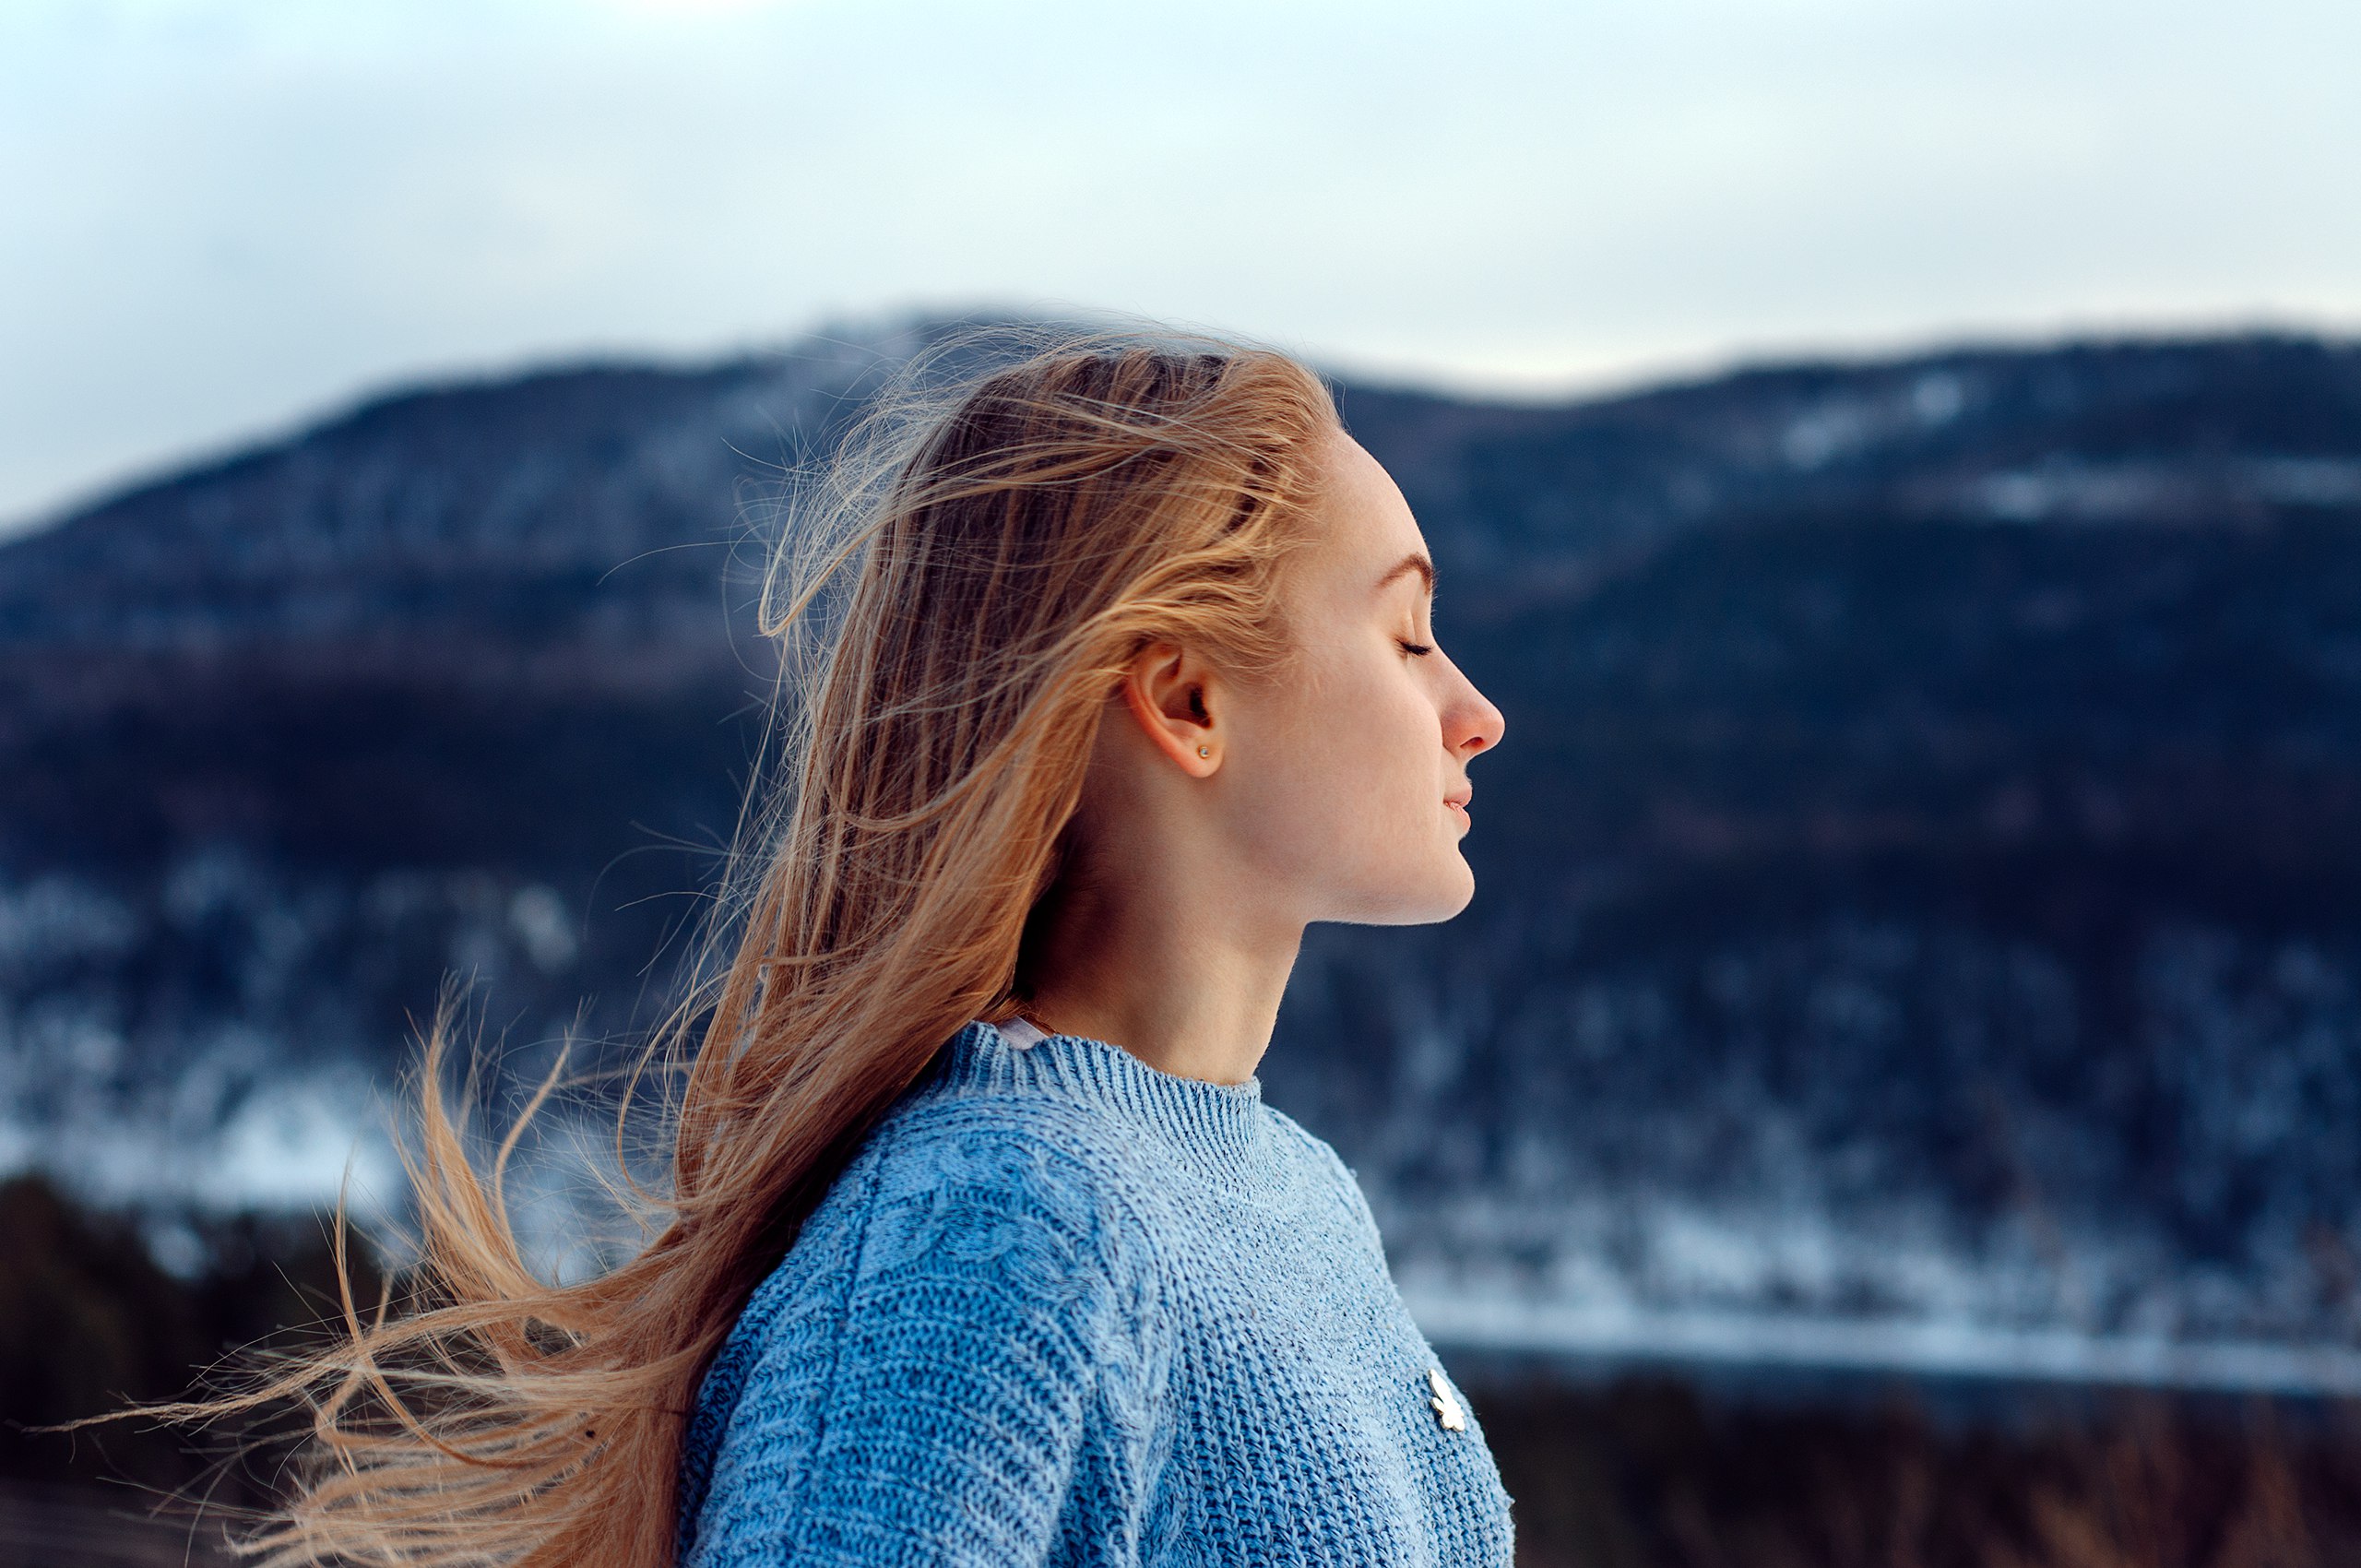 Women Blonde Model Closed Eyes Profile Sweater Mountains Snow Depth Of Field Women Outdoors Portrait 2560x1700